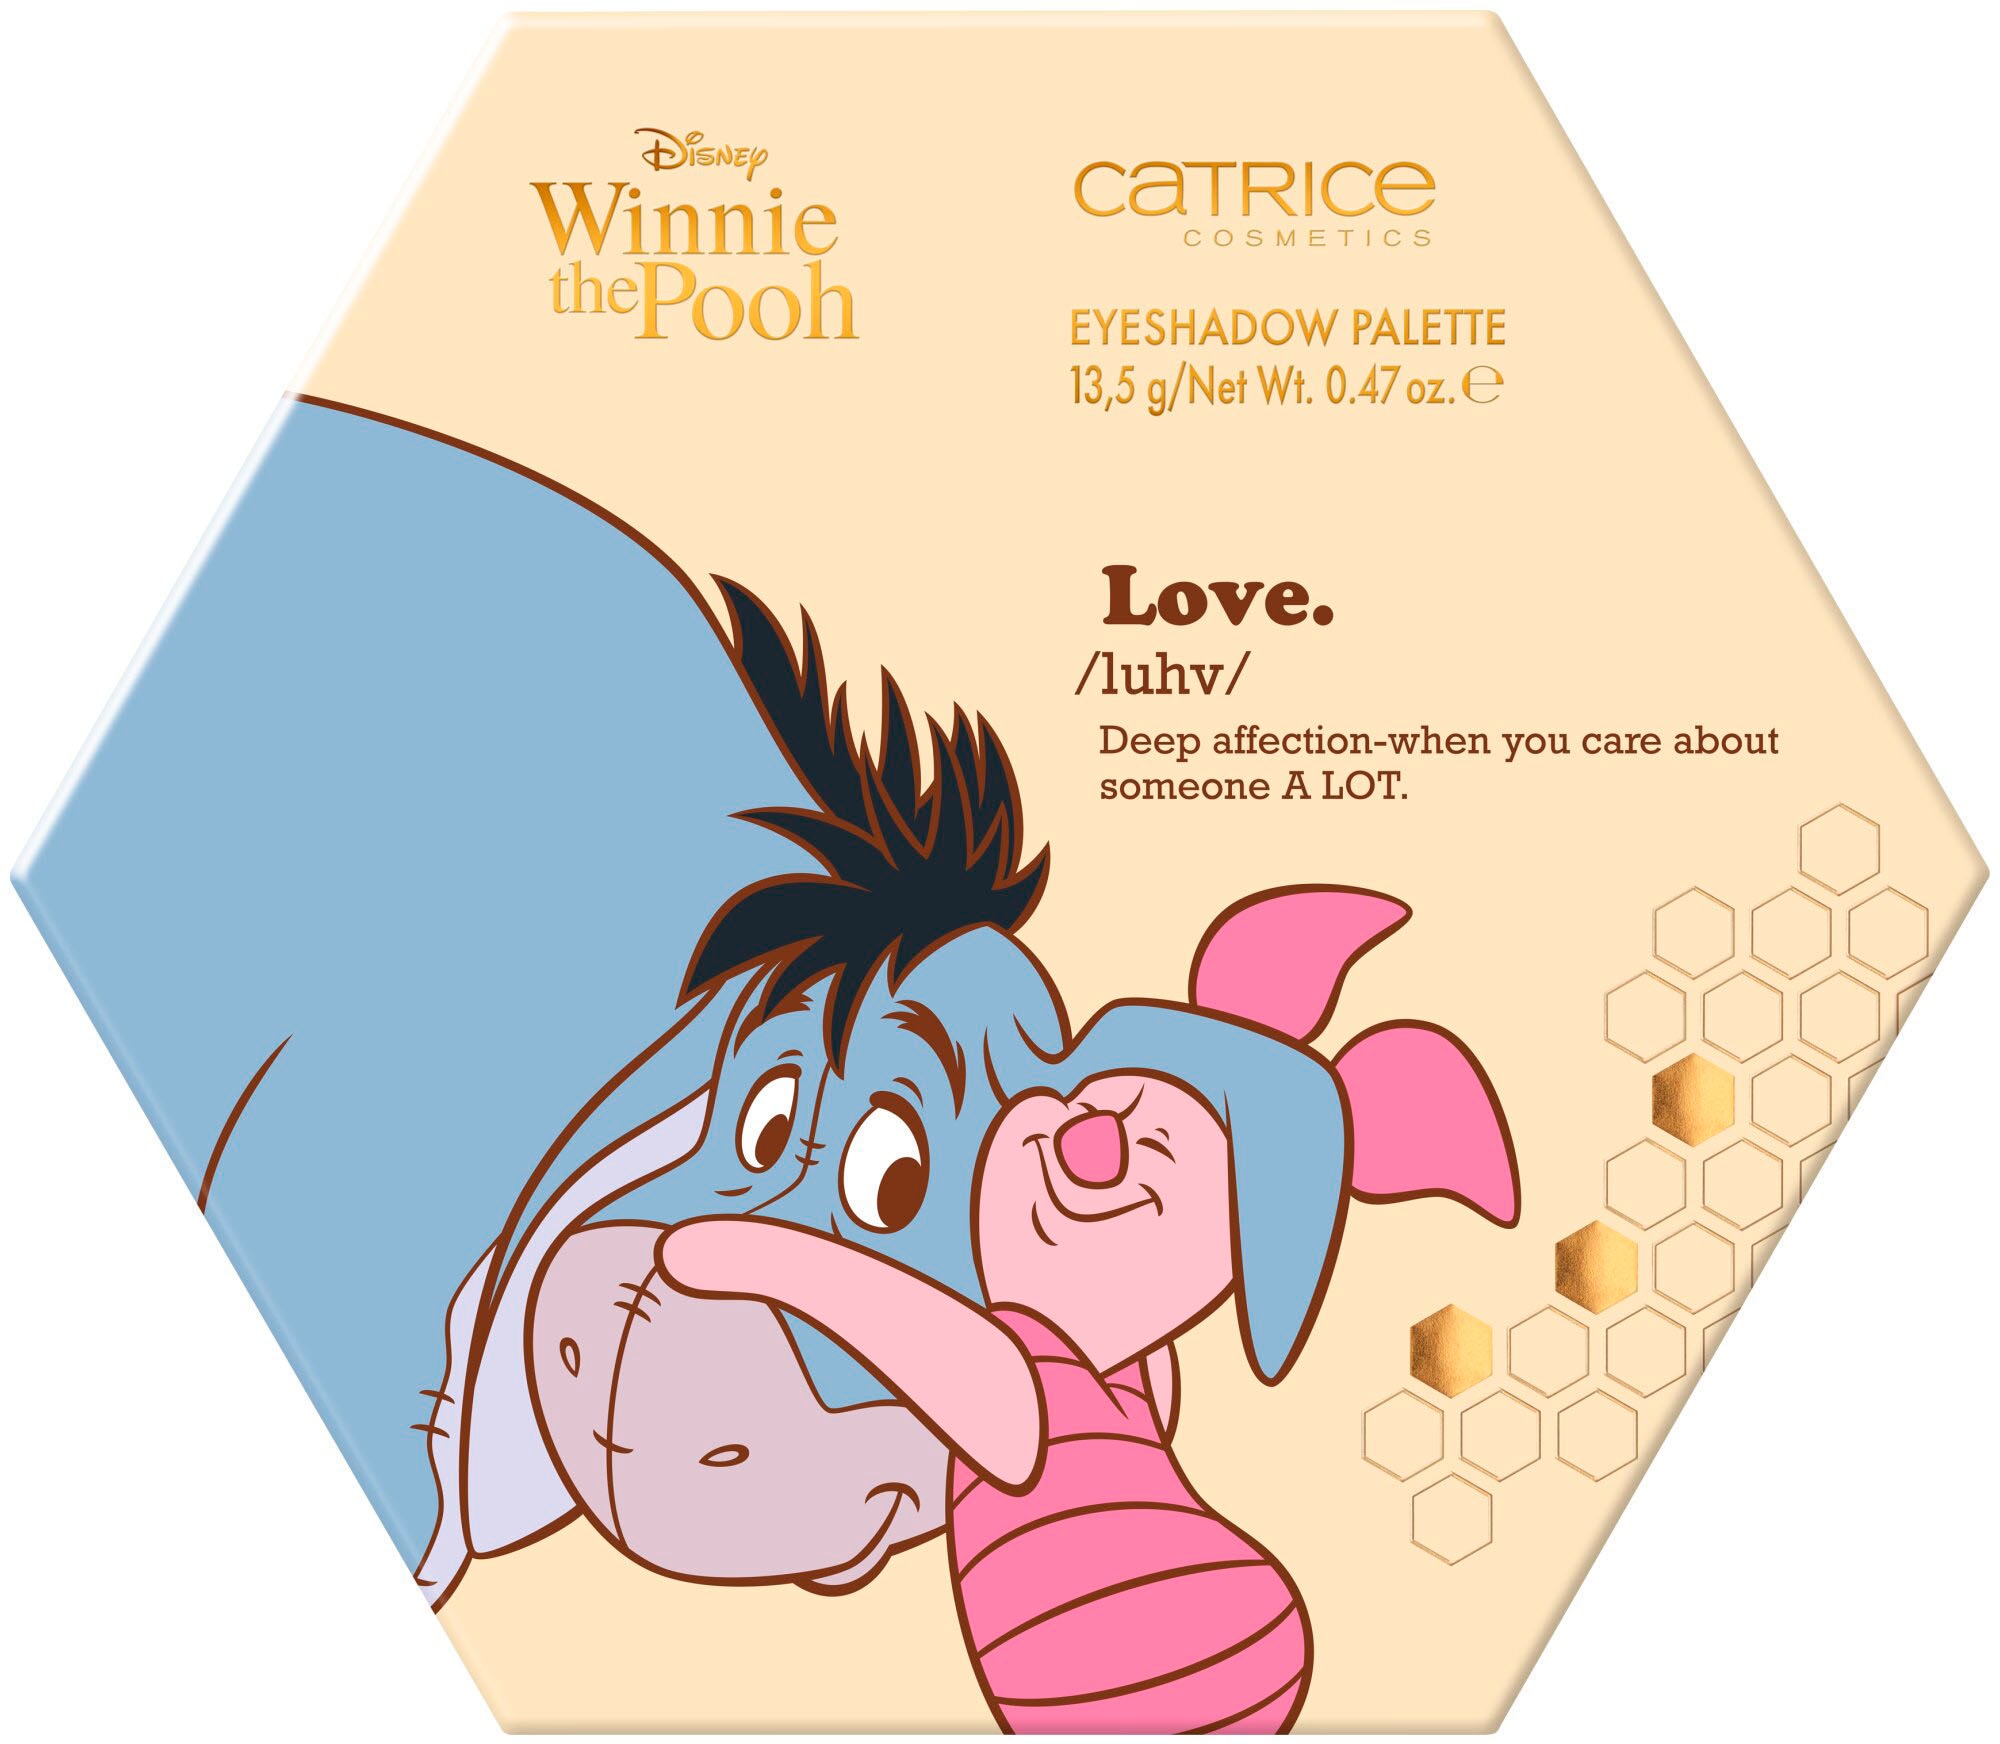 Winnie BAUR Palette« Pooh »Disney the Eyeshadow | Catrice Lidschatten-Palette